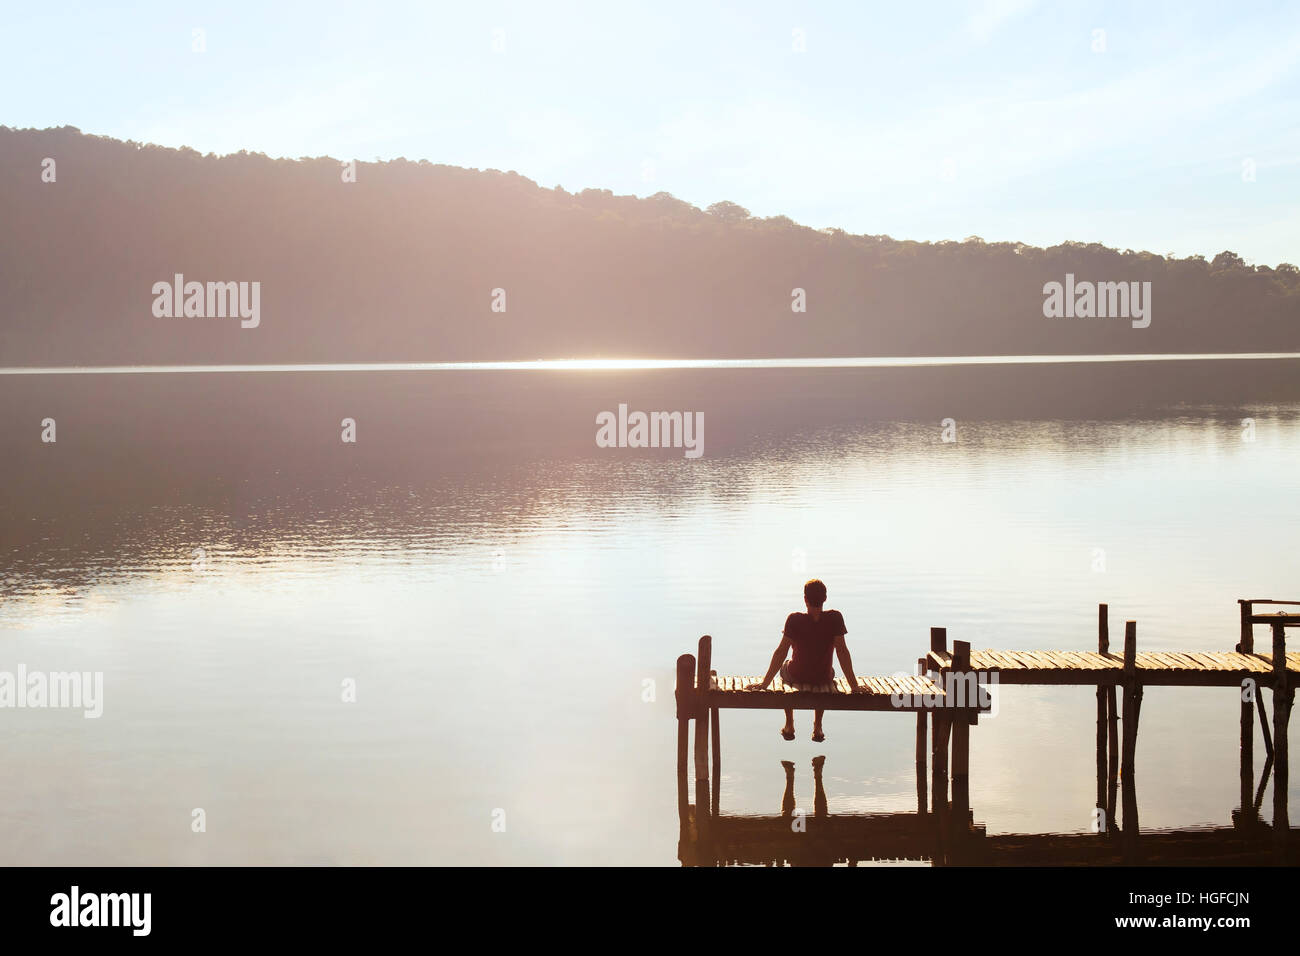 Le persone felici, d'evasione, uomo godendo di una splendida vista del lago, ispirazione nella natura Foto Stock